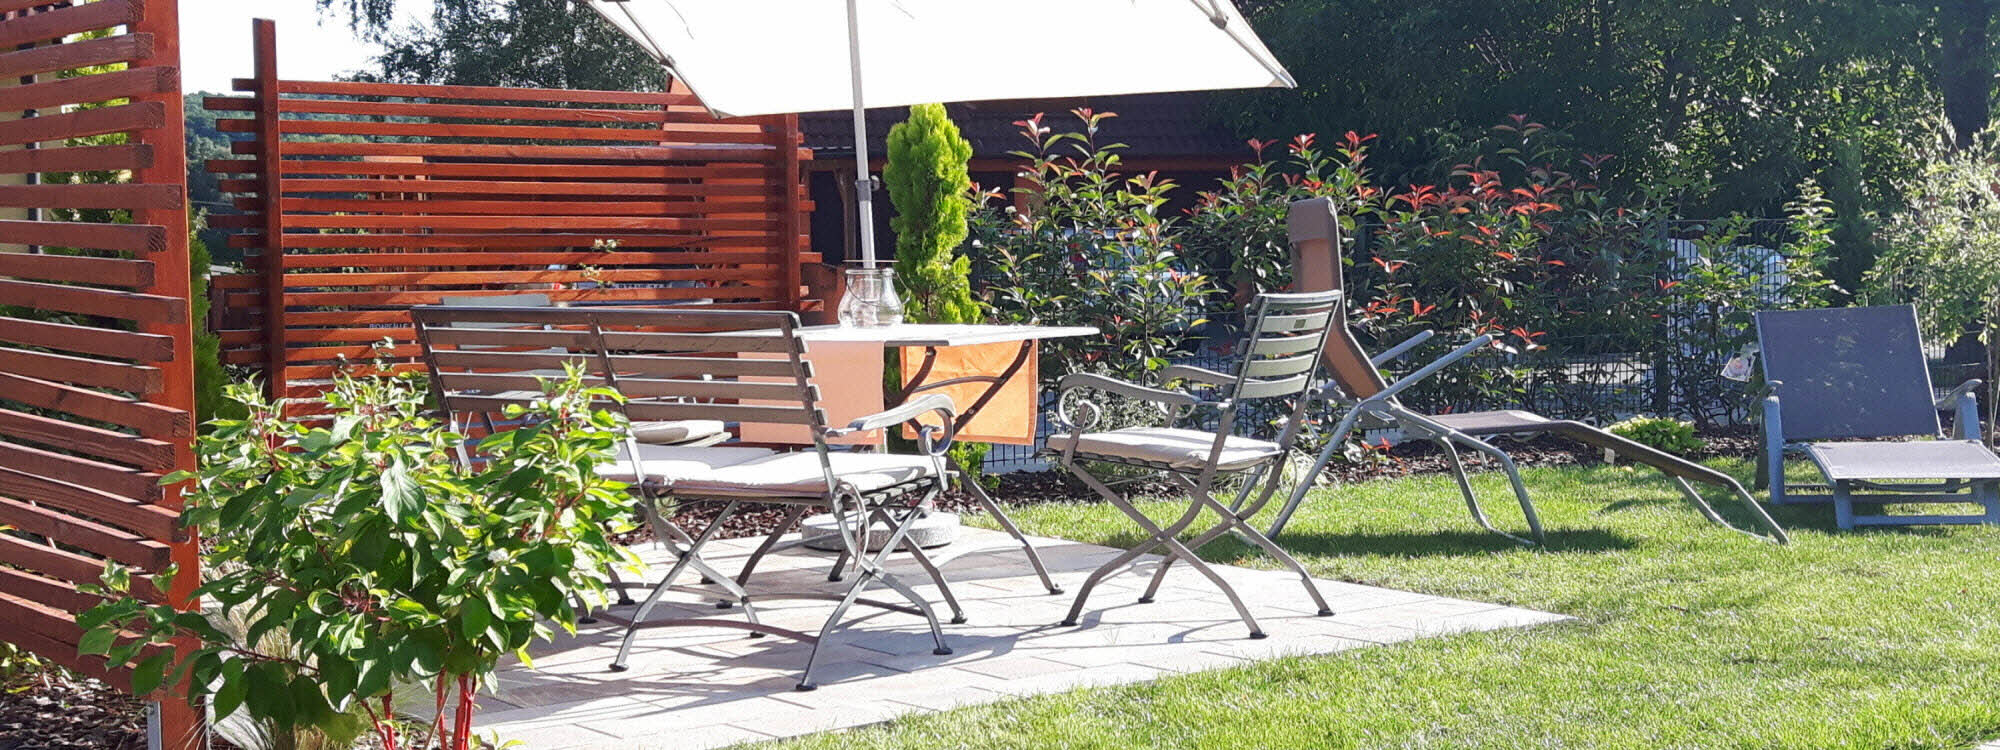 Ferienwohnung nahe Bamberg: Sitzecke im Garten